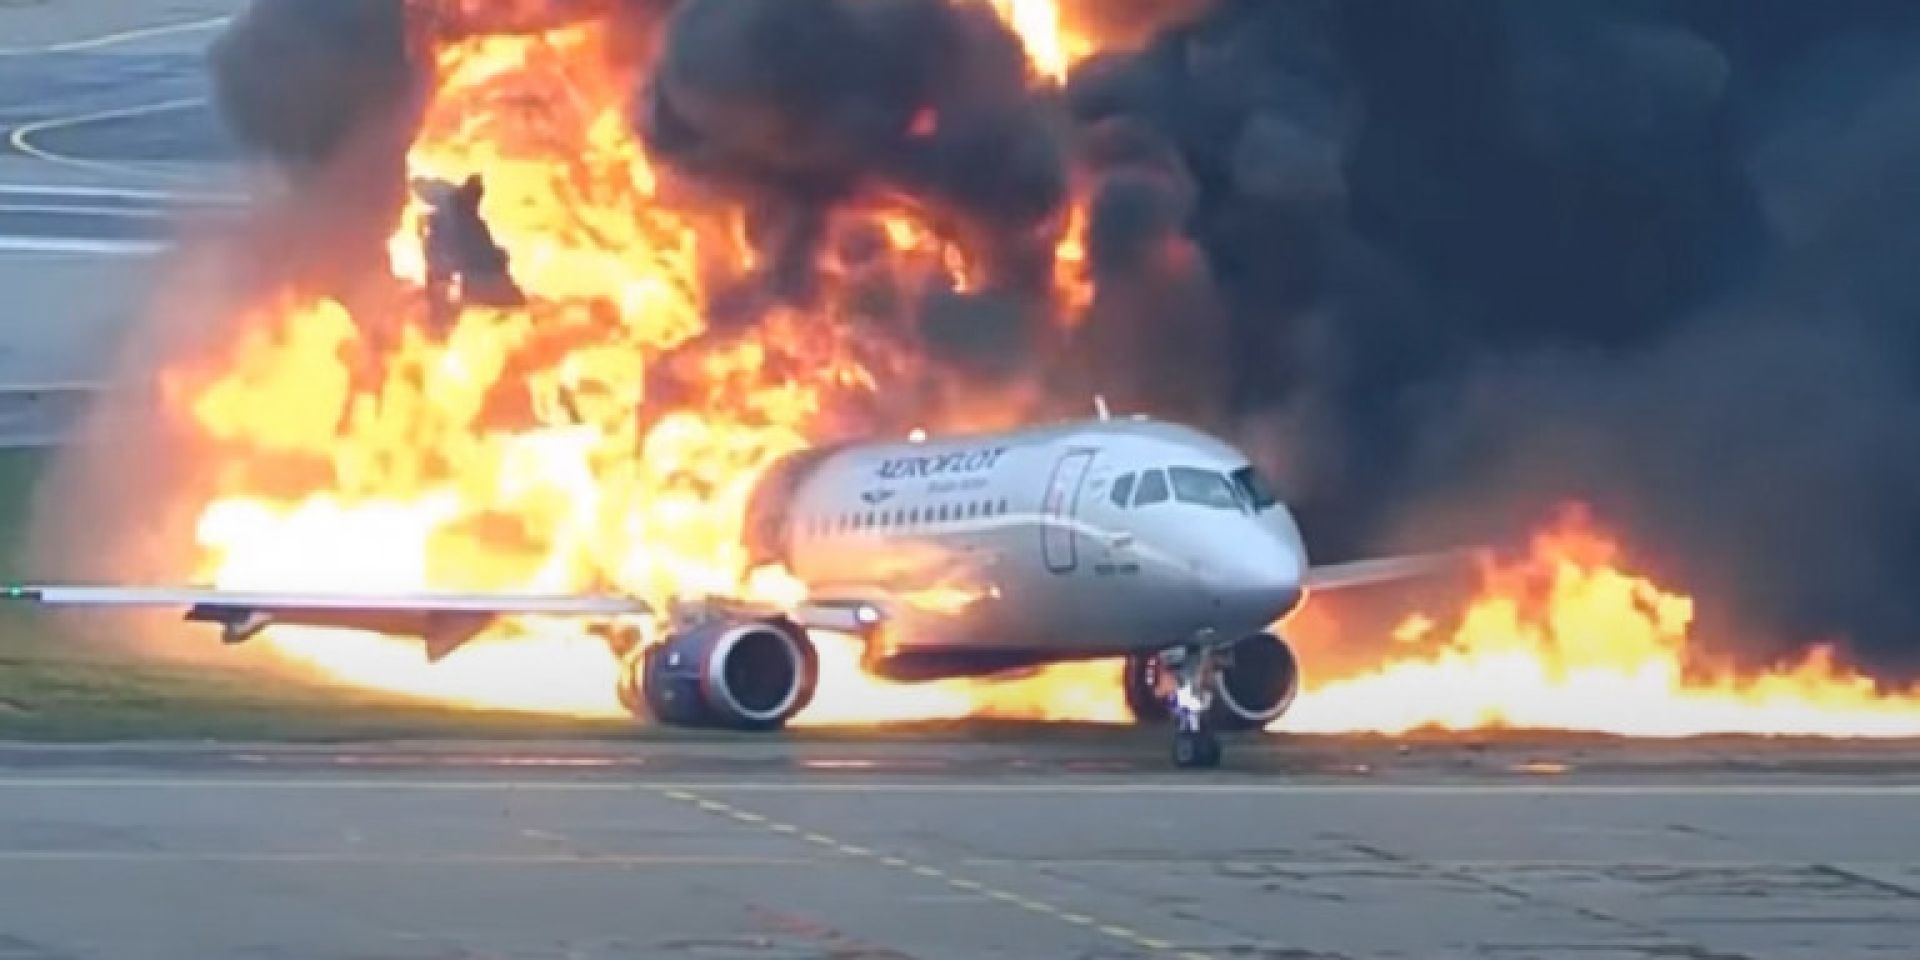 Ρωσία: Δραματικό βίντεο με φωτιά σε αεροσκάφος που στοίχισε 41 ζωές